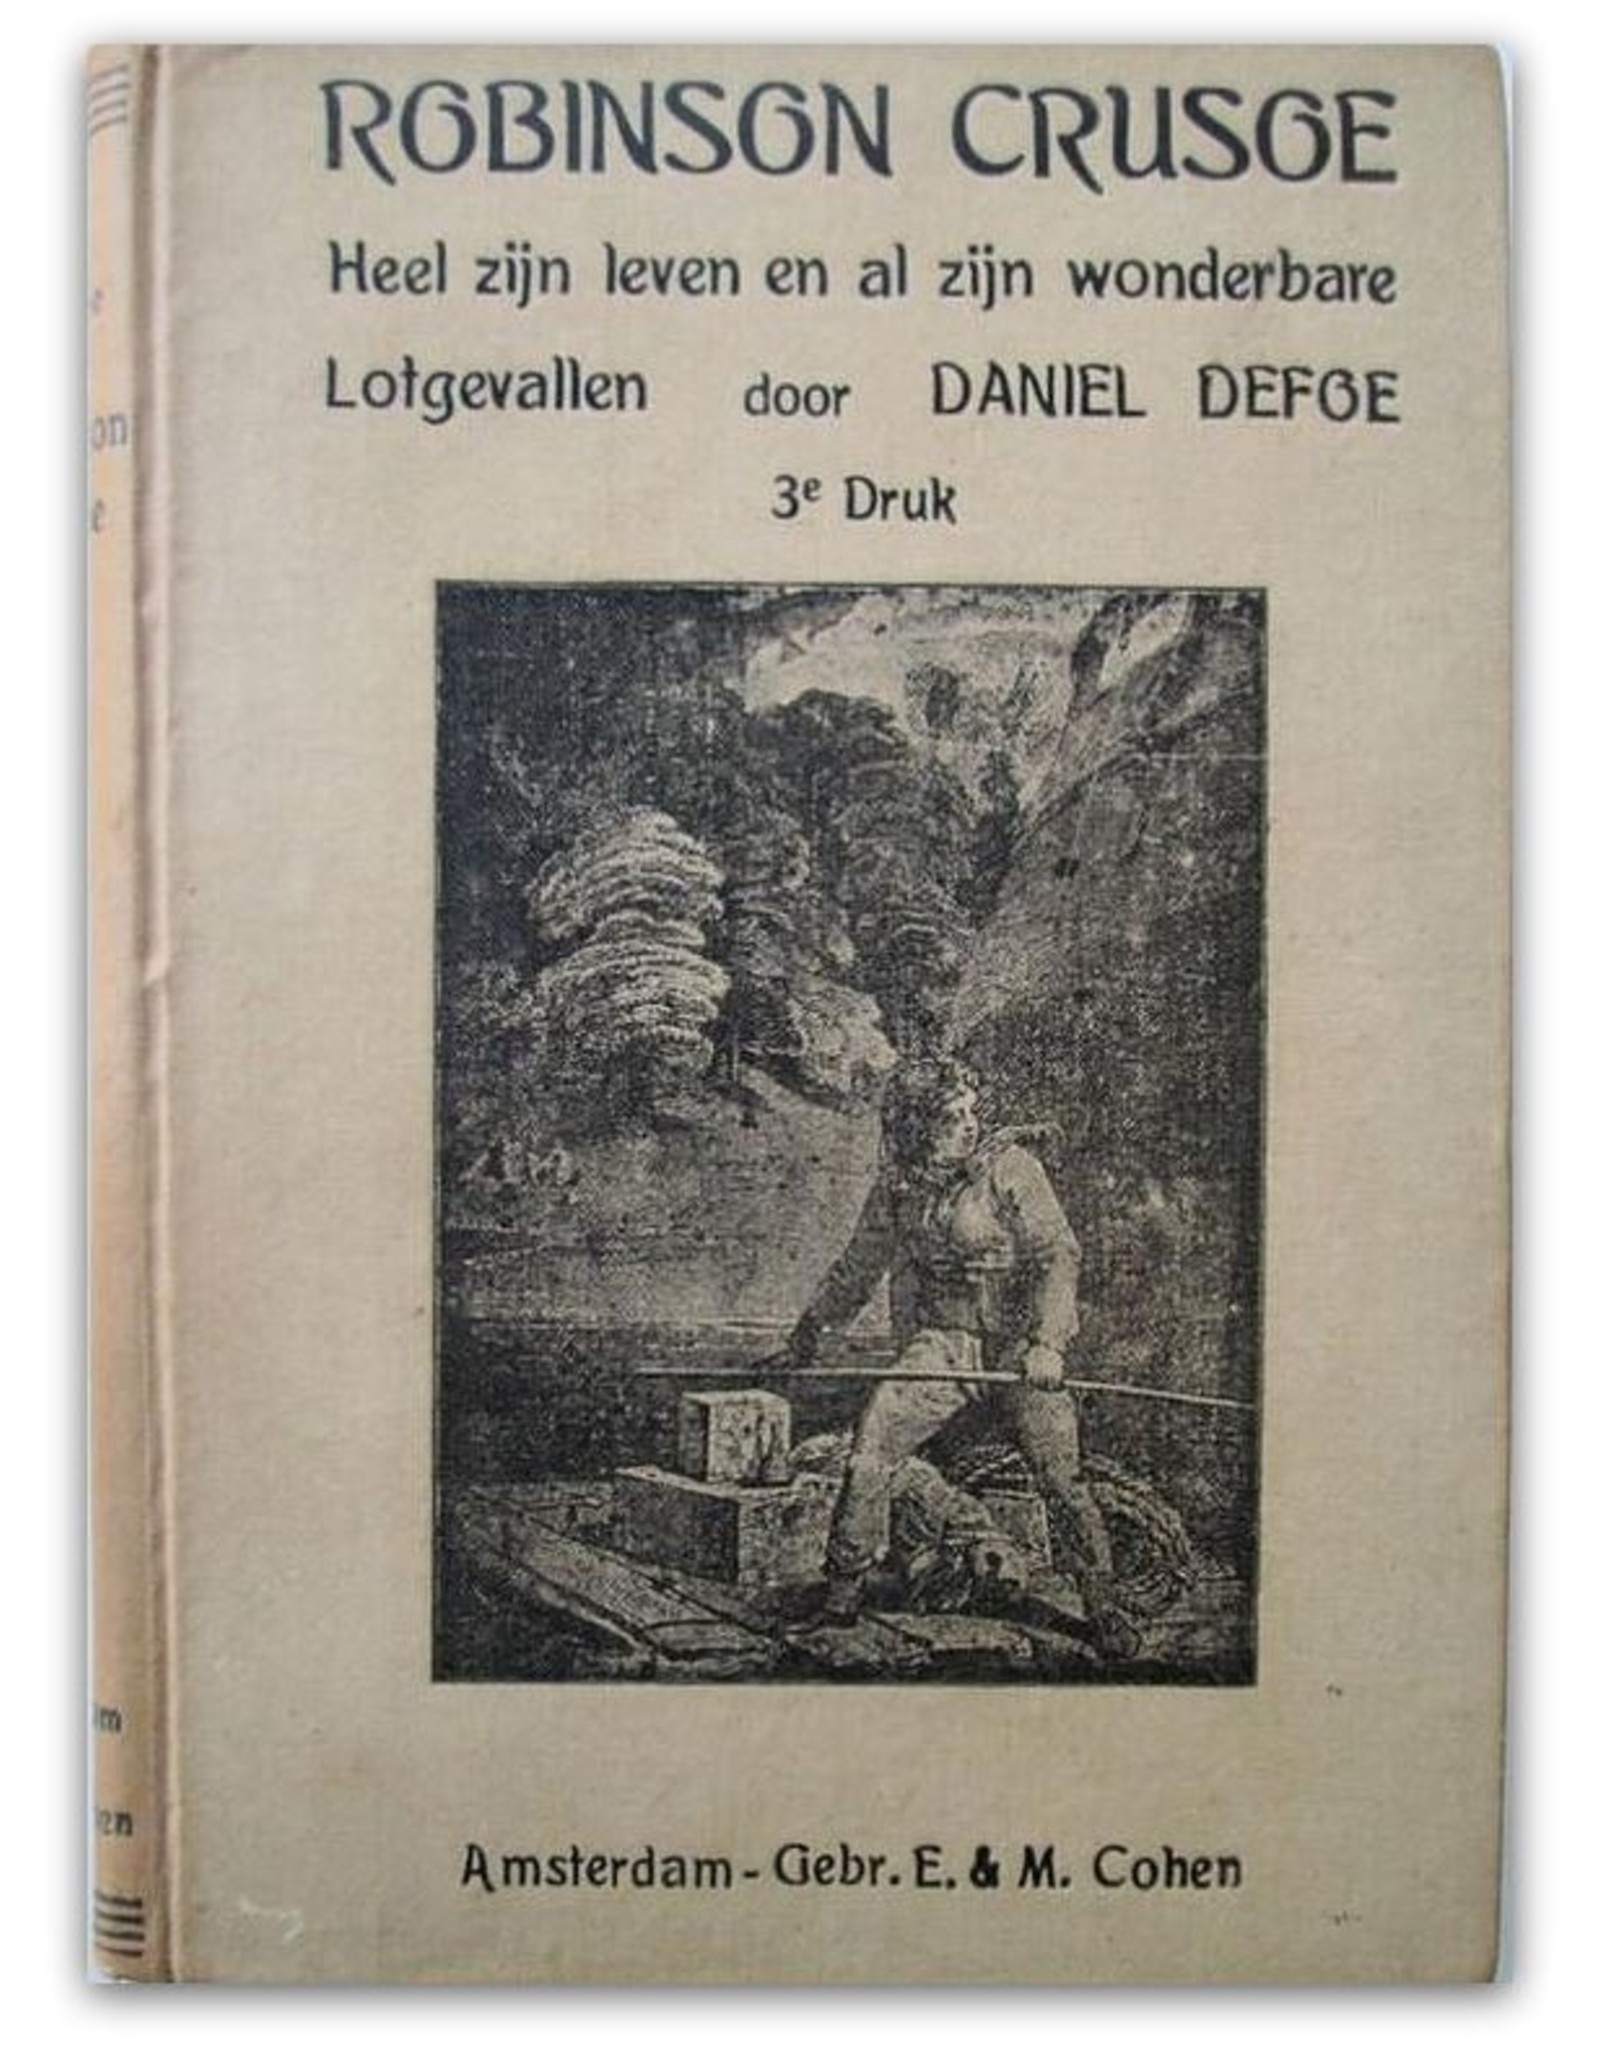 Daniel Defoe - Het leven en de vreemde wonderbare lotgevallen van Robinson Crusoe, een zeeman van York. Door hemzelven verteld. + WO2 reclamefolder van Arnhemse boekhandel